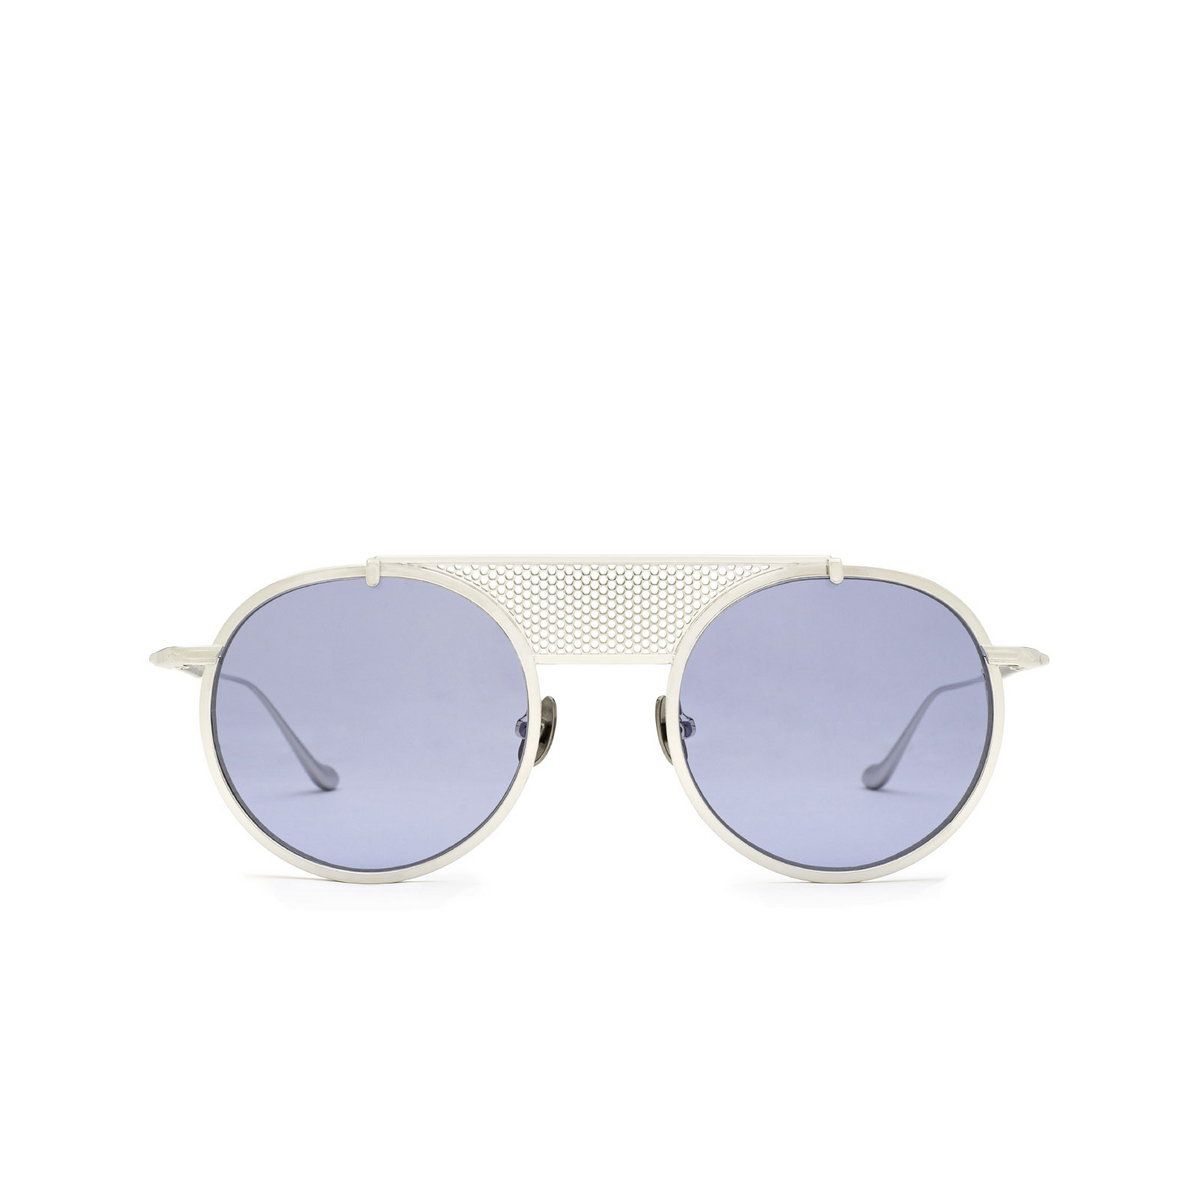 Matsuda® Round Sunglasses: M3097 color Pw Palladium White - front view